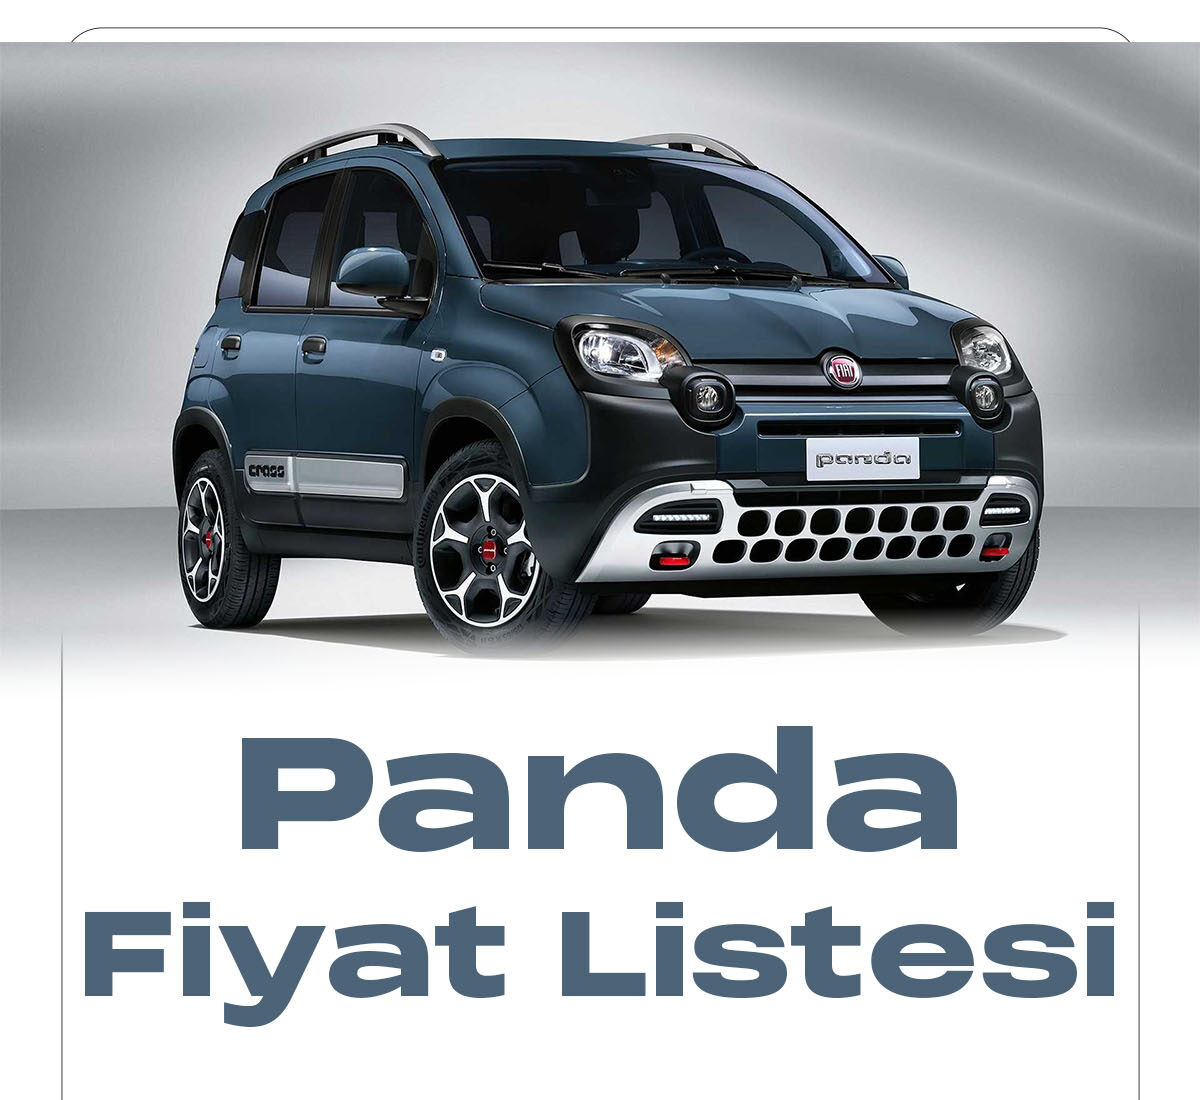 Fiat Panda Ocak fiyat listesi yayımlandı. Türkiye'de en uygun araç markaları arasında ilk sıralarda yer alan Fiat markası, araç fiyatlarını güncellemeye devam ediyor.